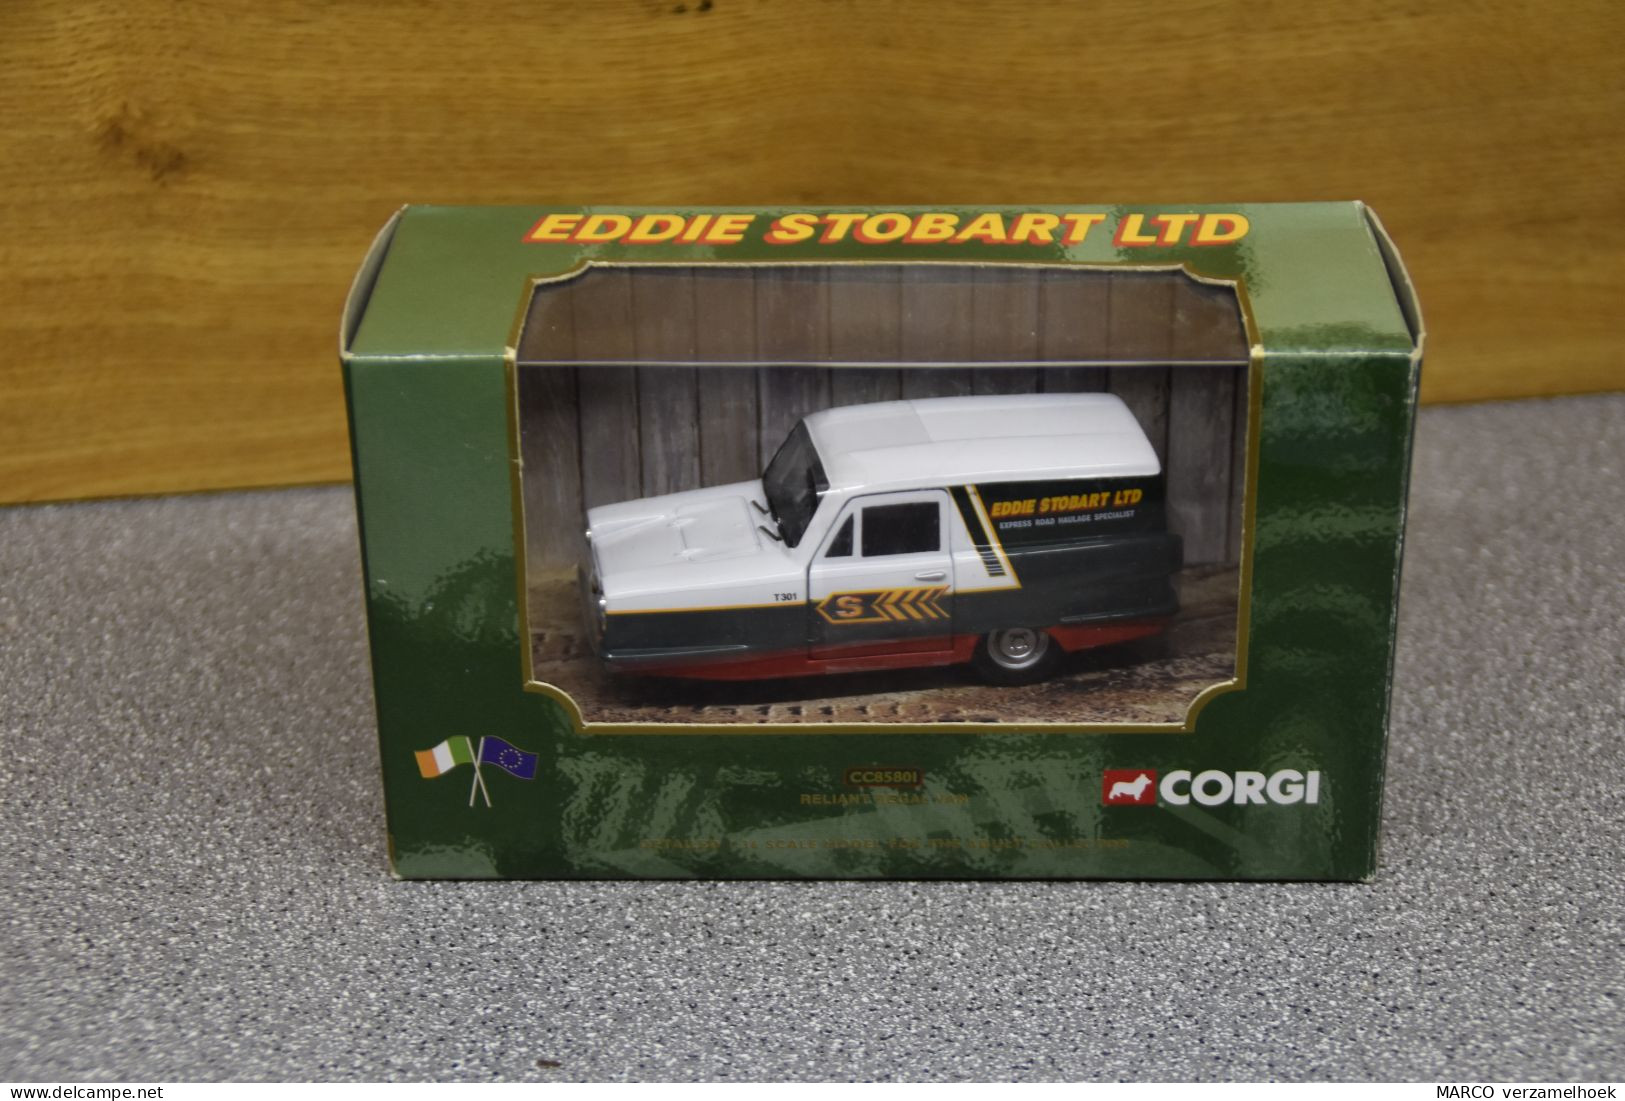 CORGI Toys CC85801 England Eddie Stobart LTD 2001 Reliant Regal Van Scale 1:43 - Corgi Toys